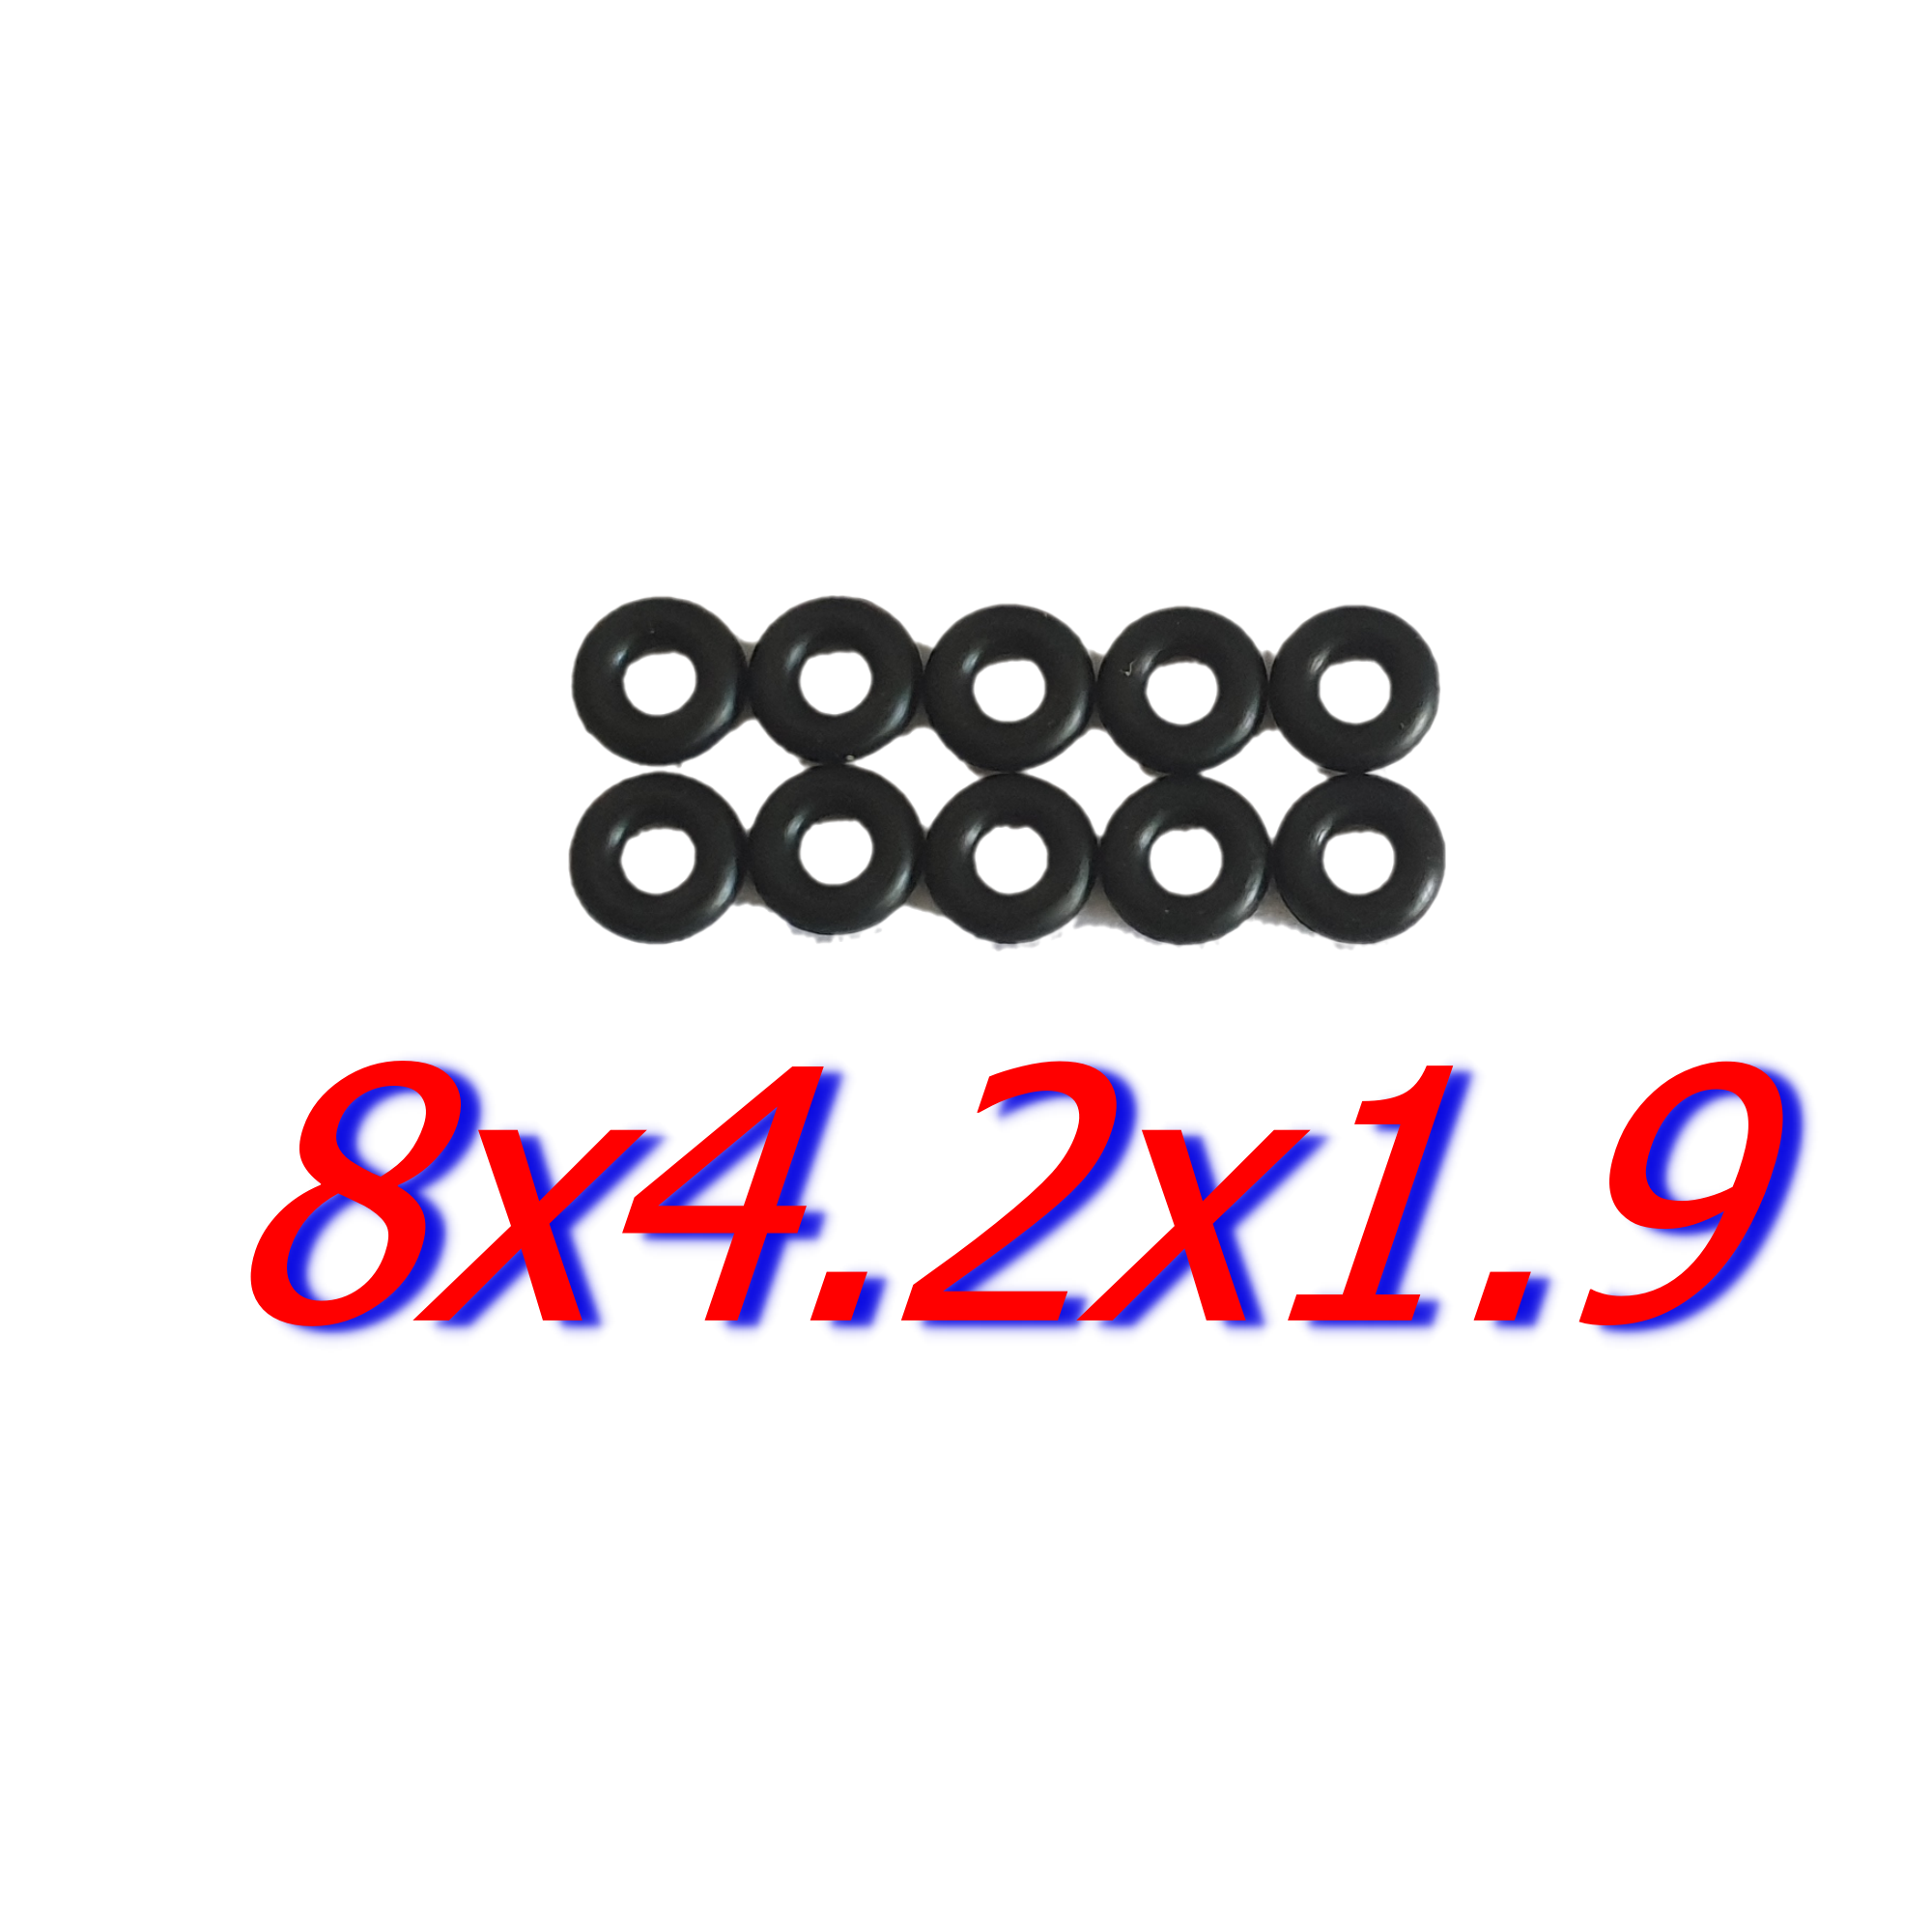 ลูกยางโอริงโตนอก8มิลรูใน3.2หนา2.4มิล และโต8มิลรูใน4.2หนา1.9เลือกได้ขนาดละ =10 ชิ้น